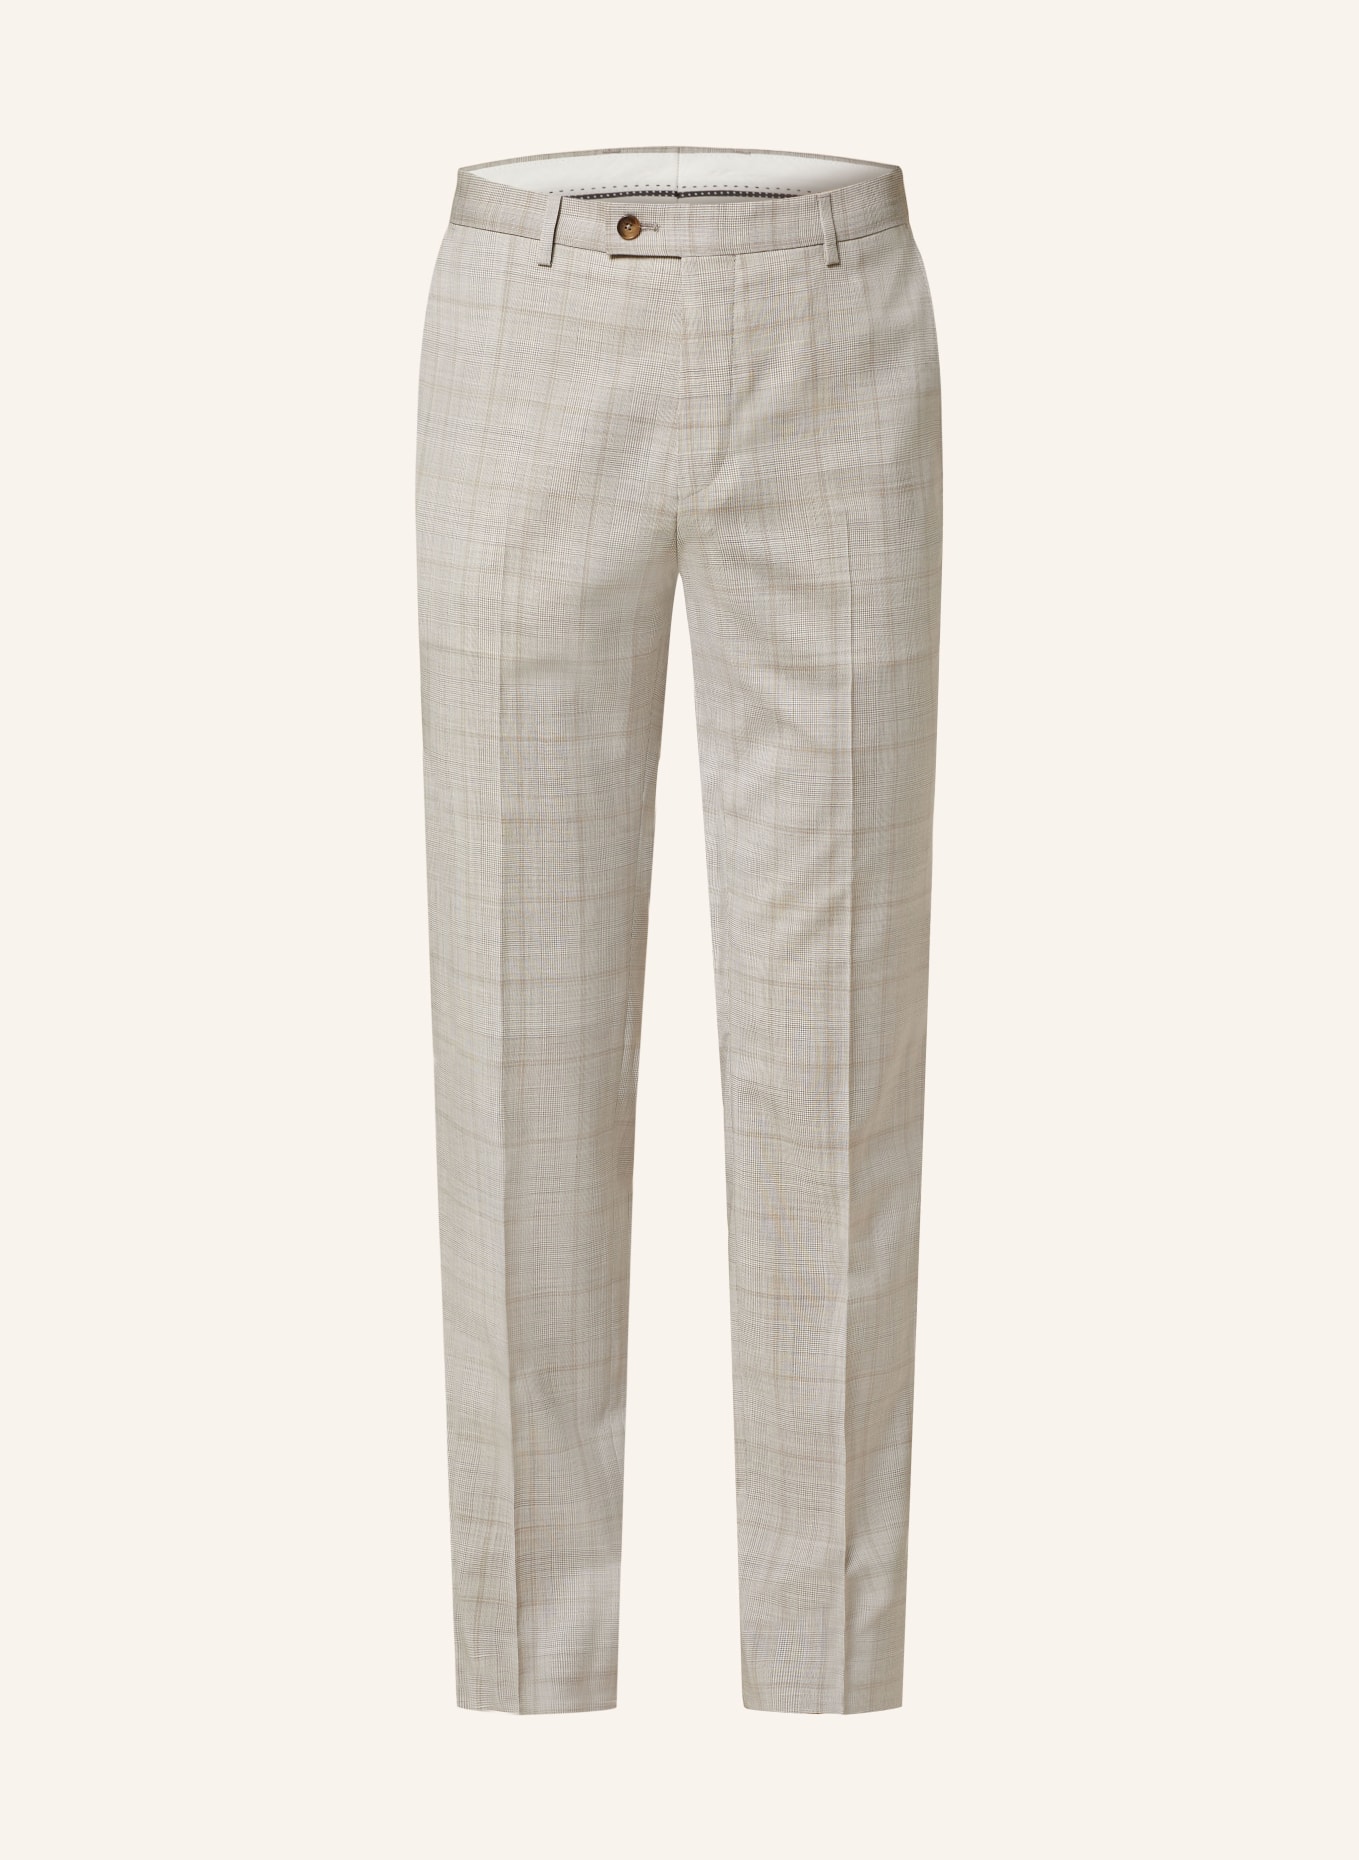 SAND COPENHAGEN Suit trousers CRAIG classic fit, Color: 220 hellbeige (Image 1)